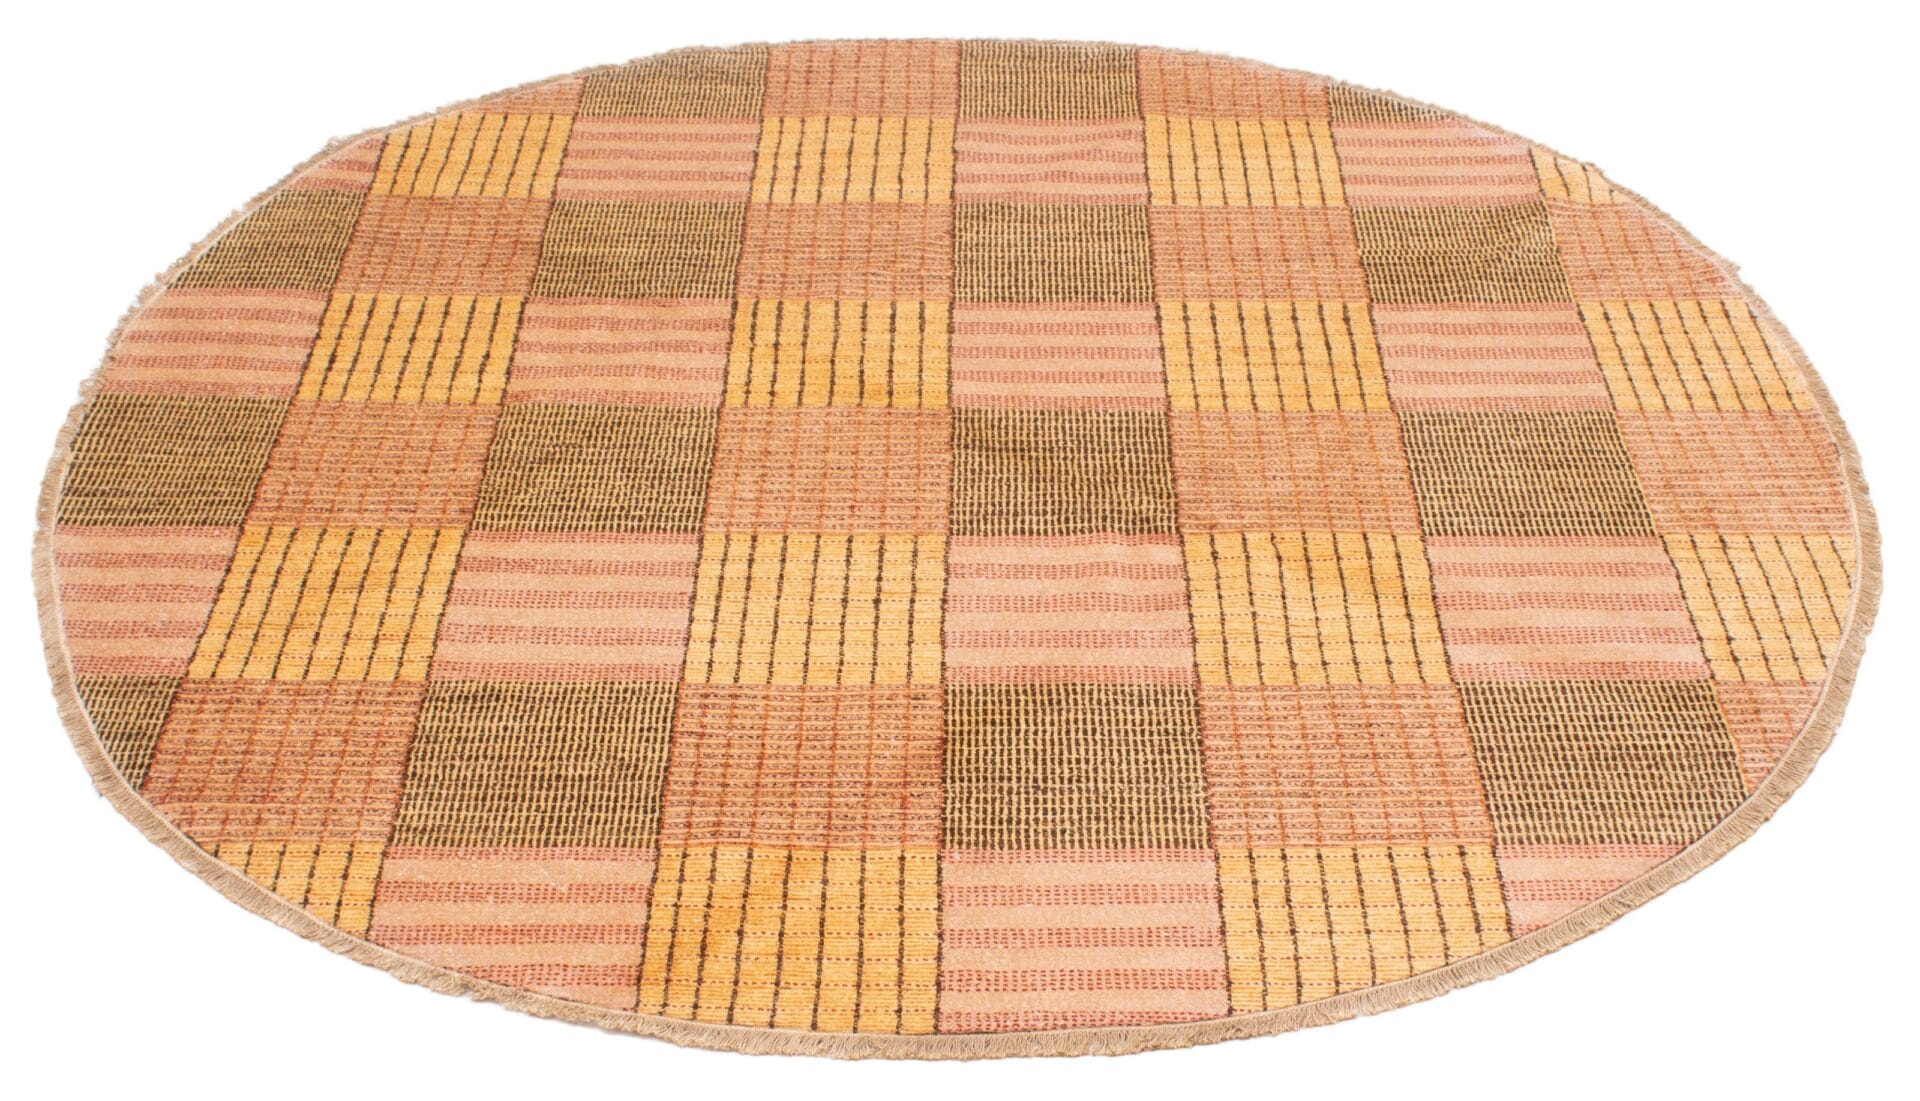 Beschrijving: Een vloerkleed met een schaakbord patroon.